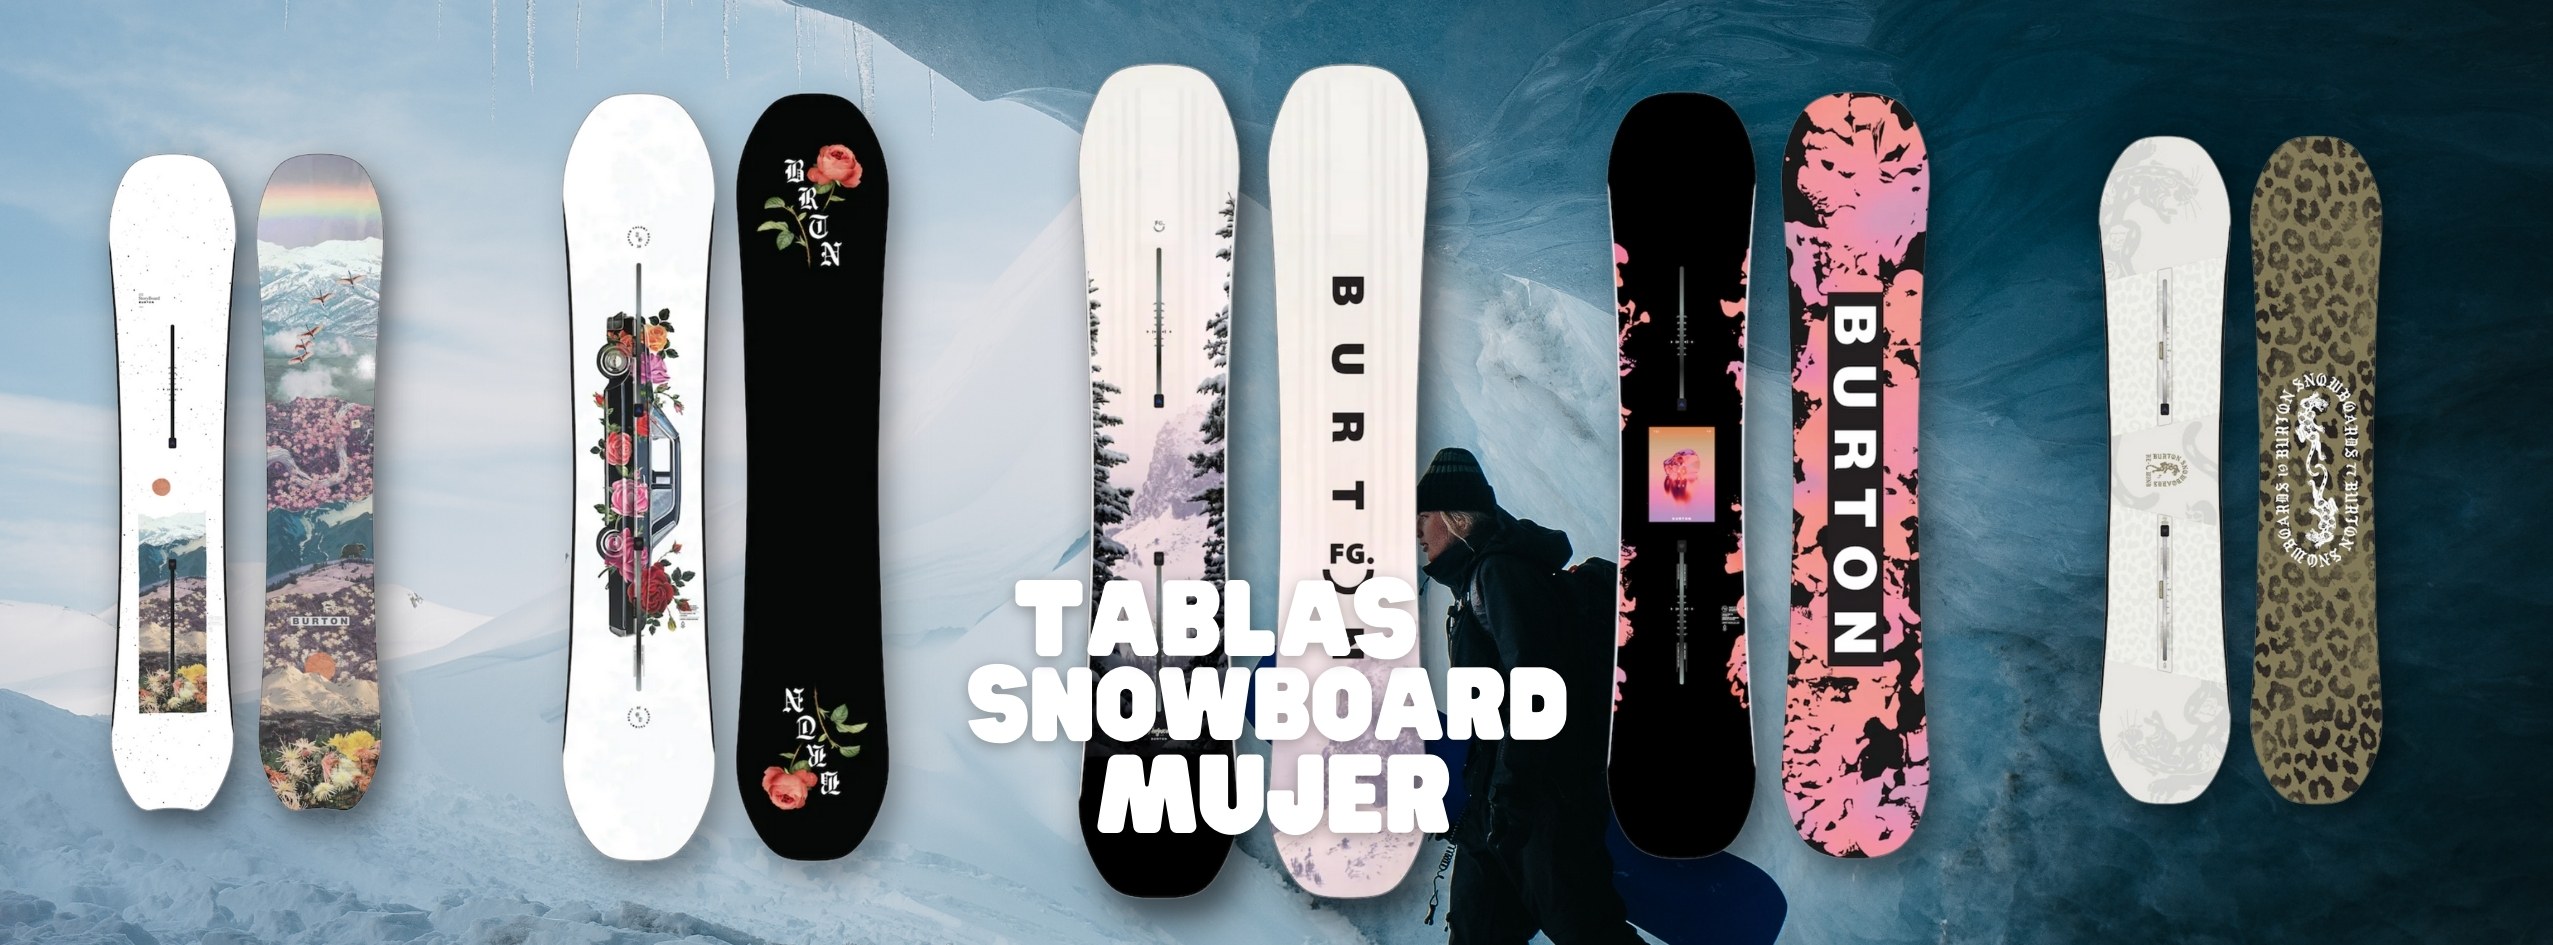 Fever Snowboard Shop | Cabin Fever